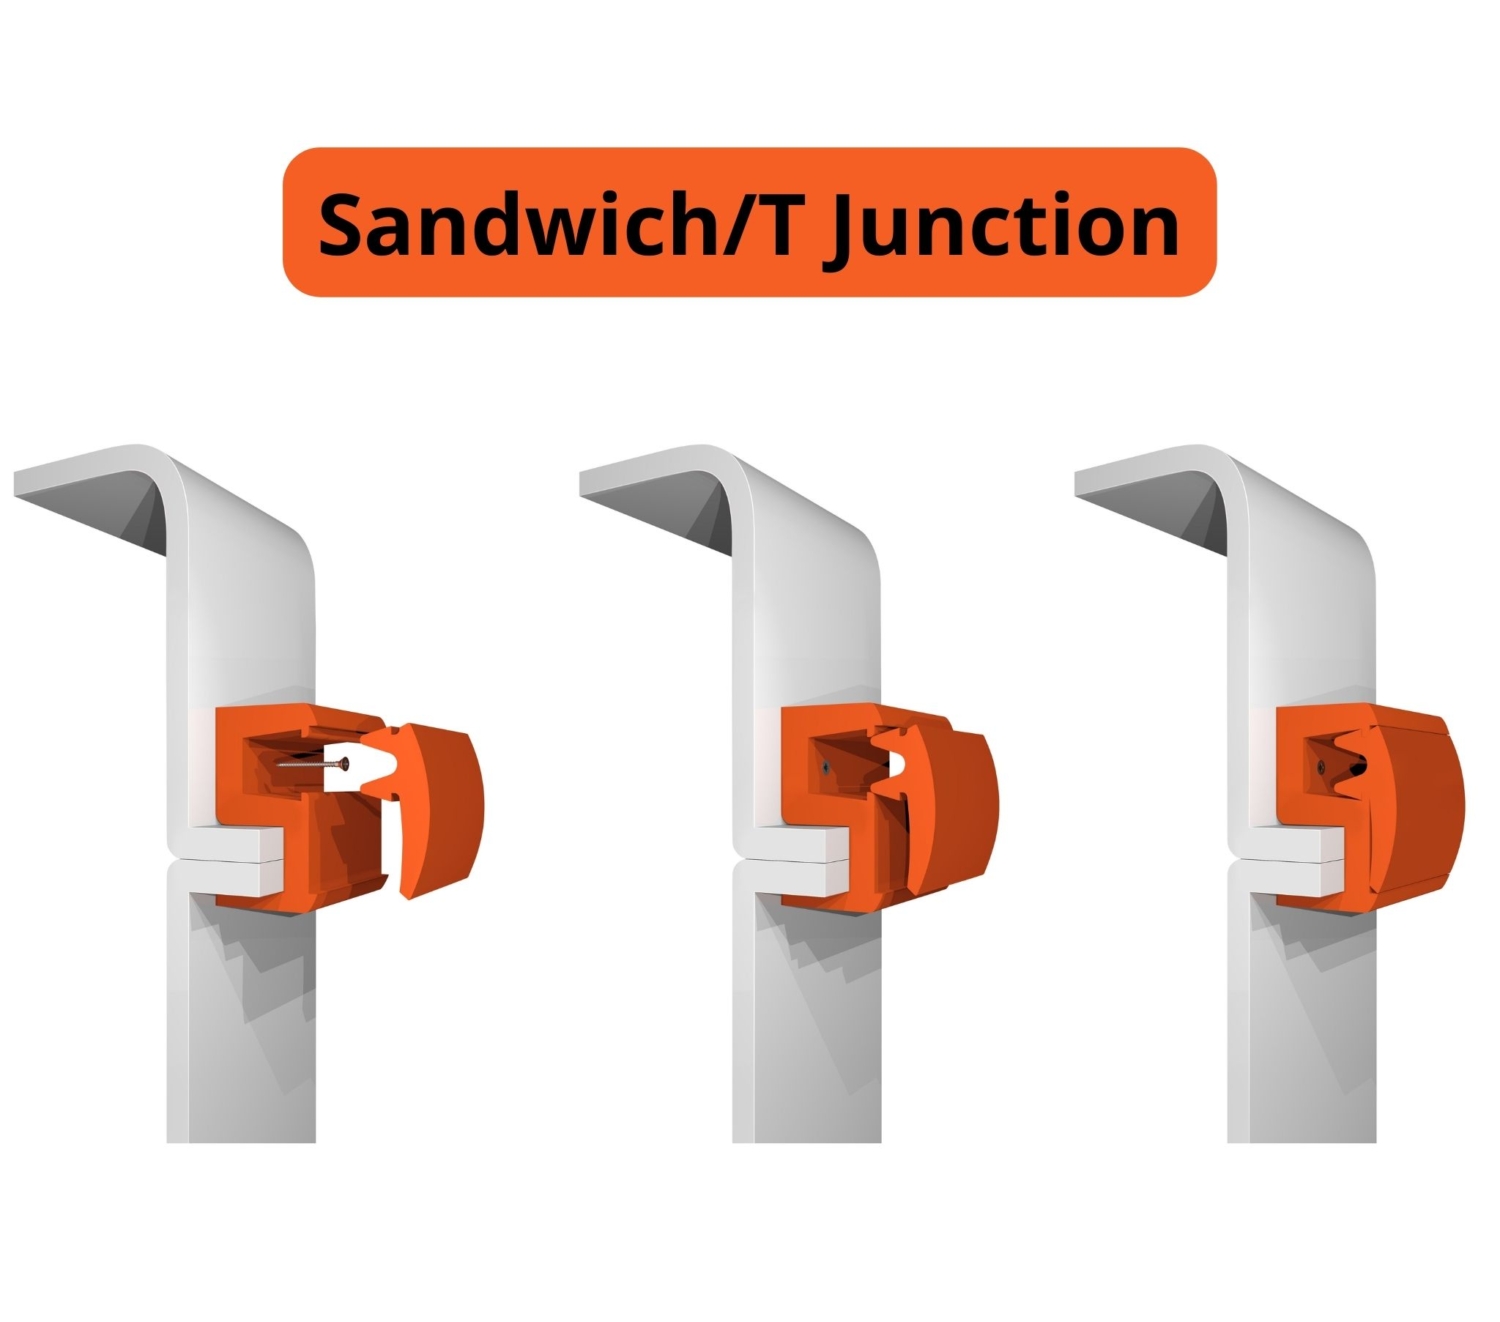 Sandwich/T junction